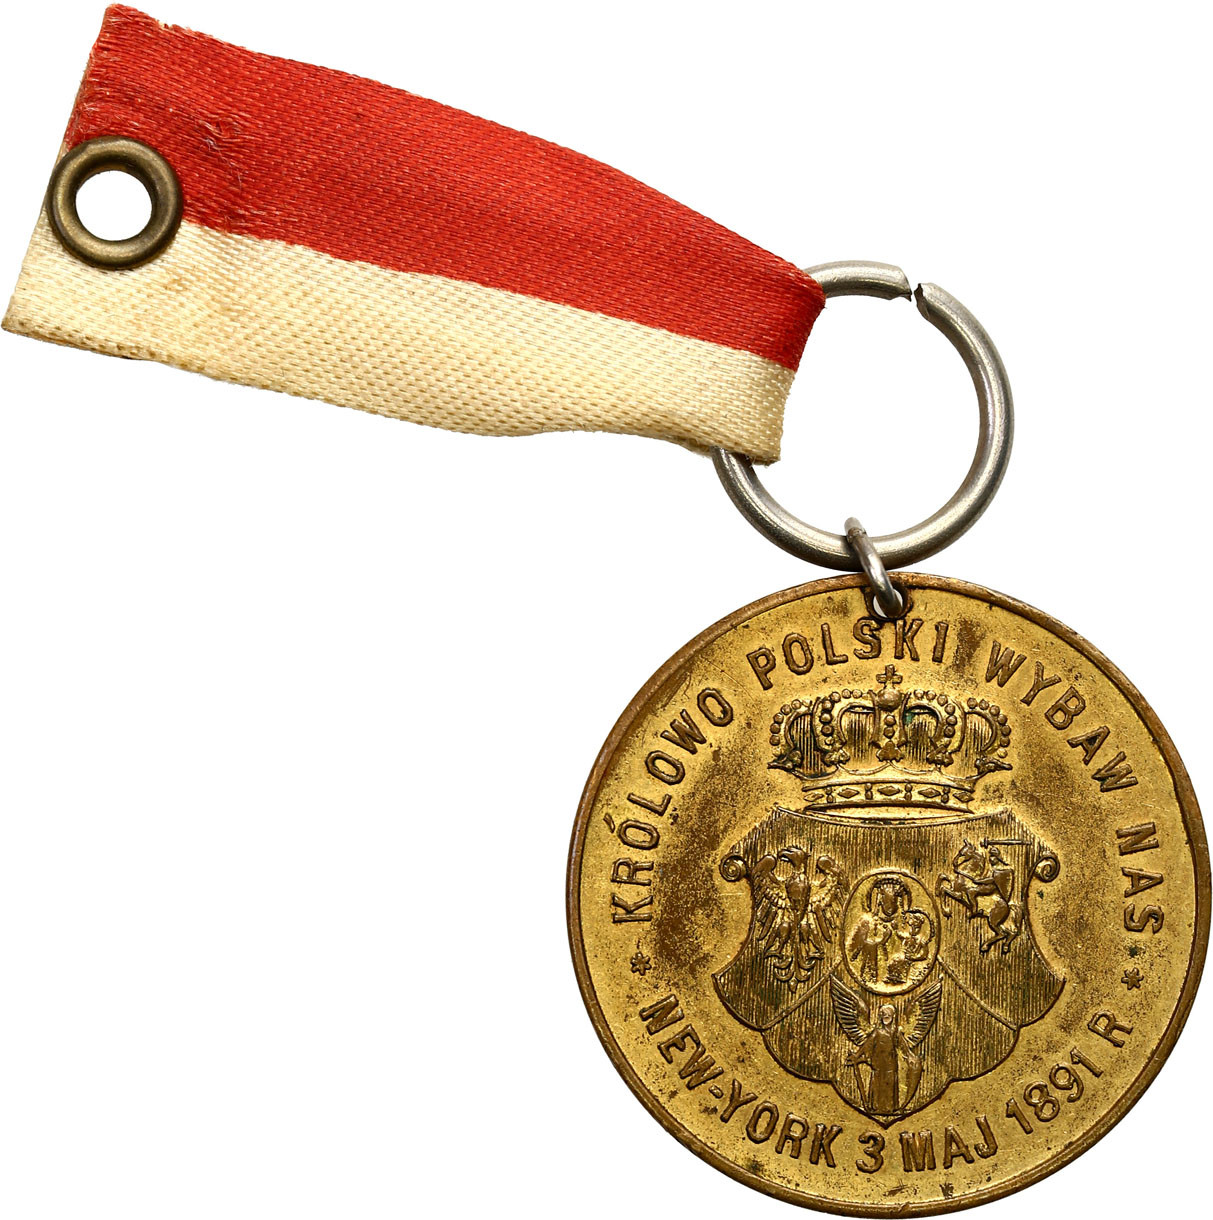 Polska pod Zaborami. Medal 100 lecie rocznicy Konstytucji 3 maja 1891, Nowy Jork